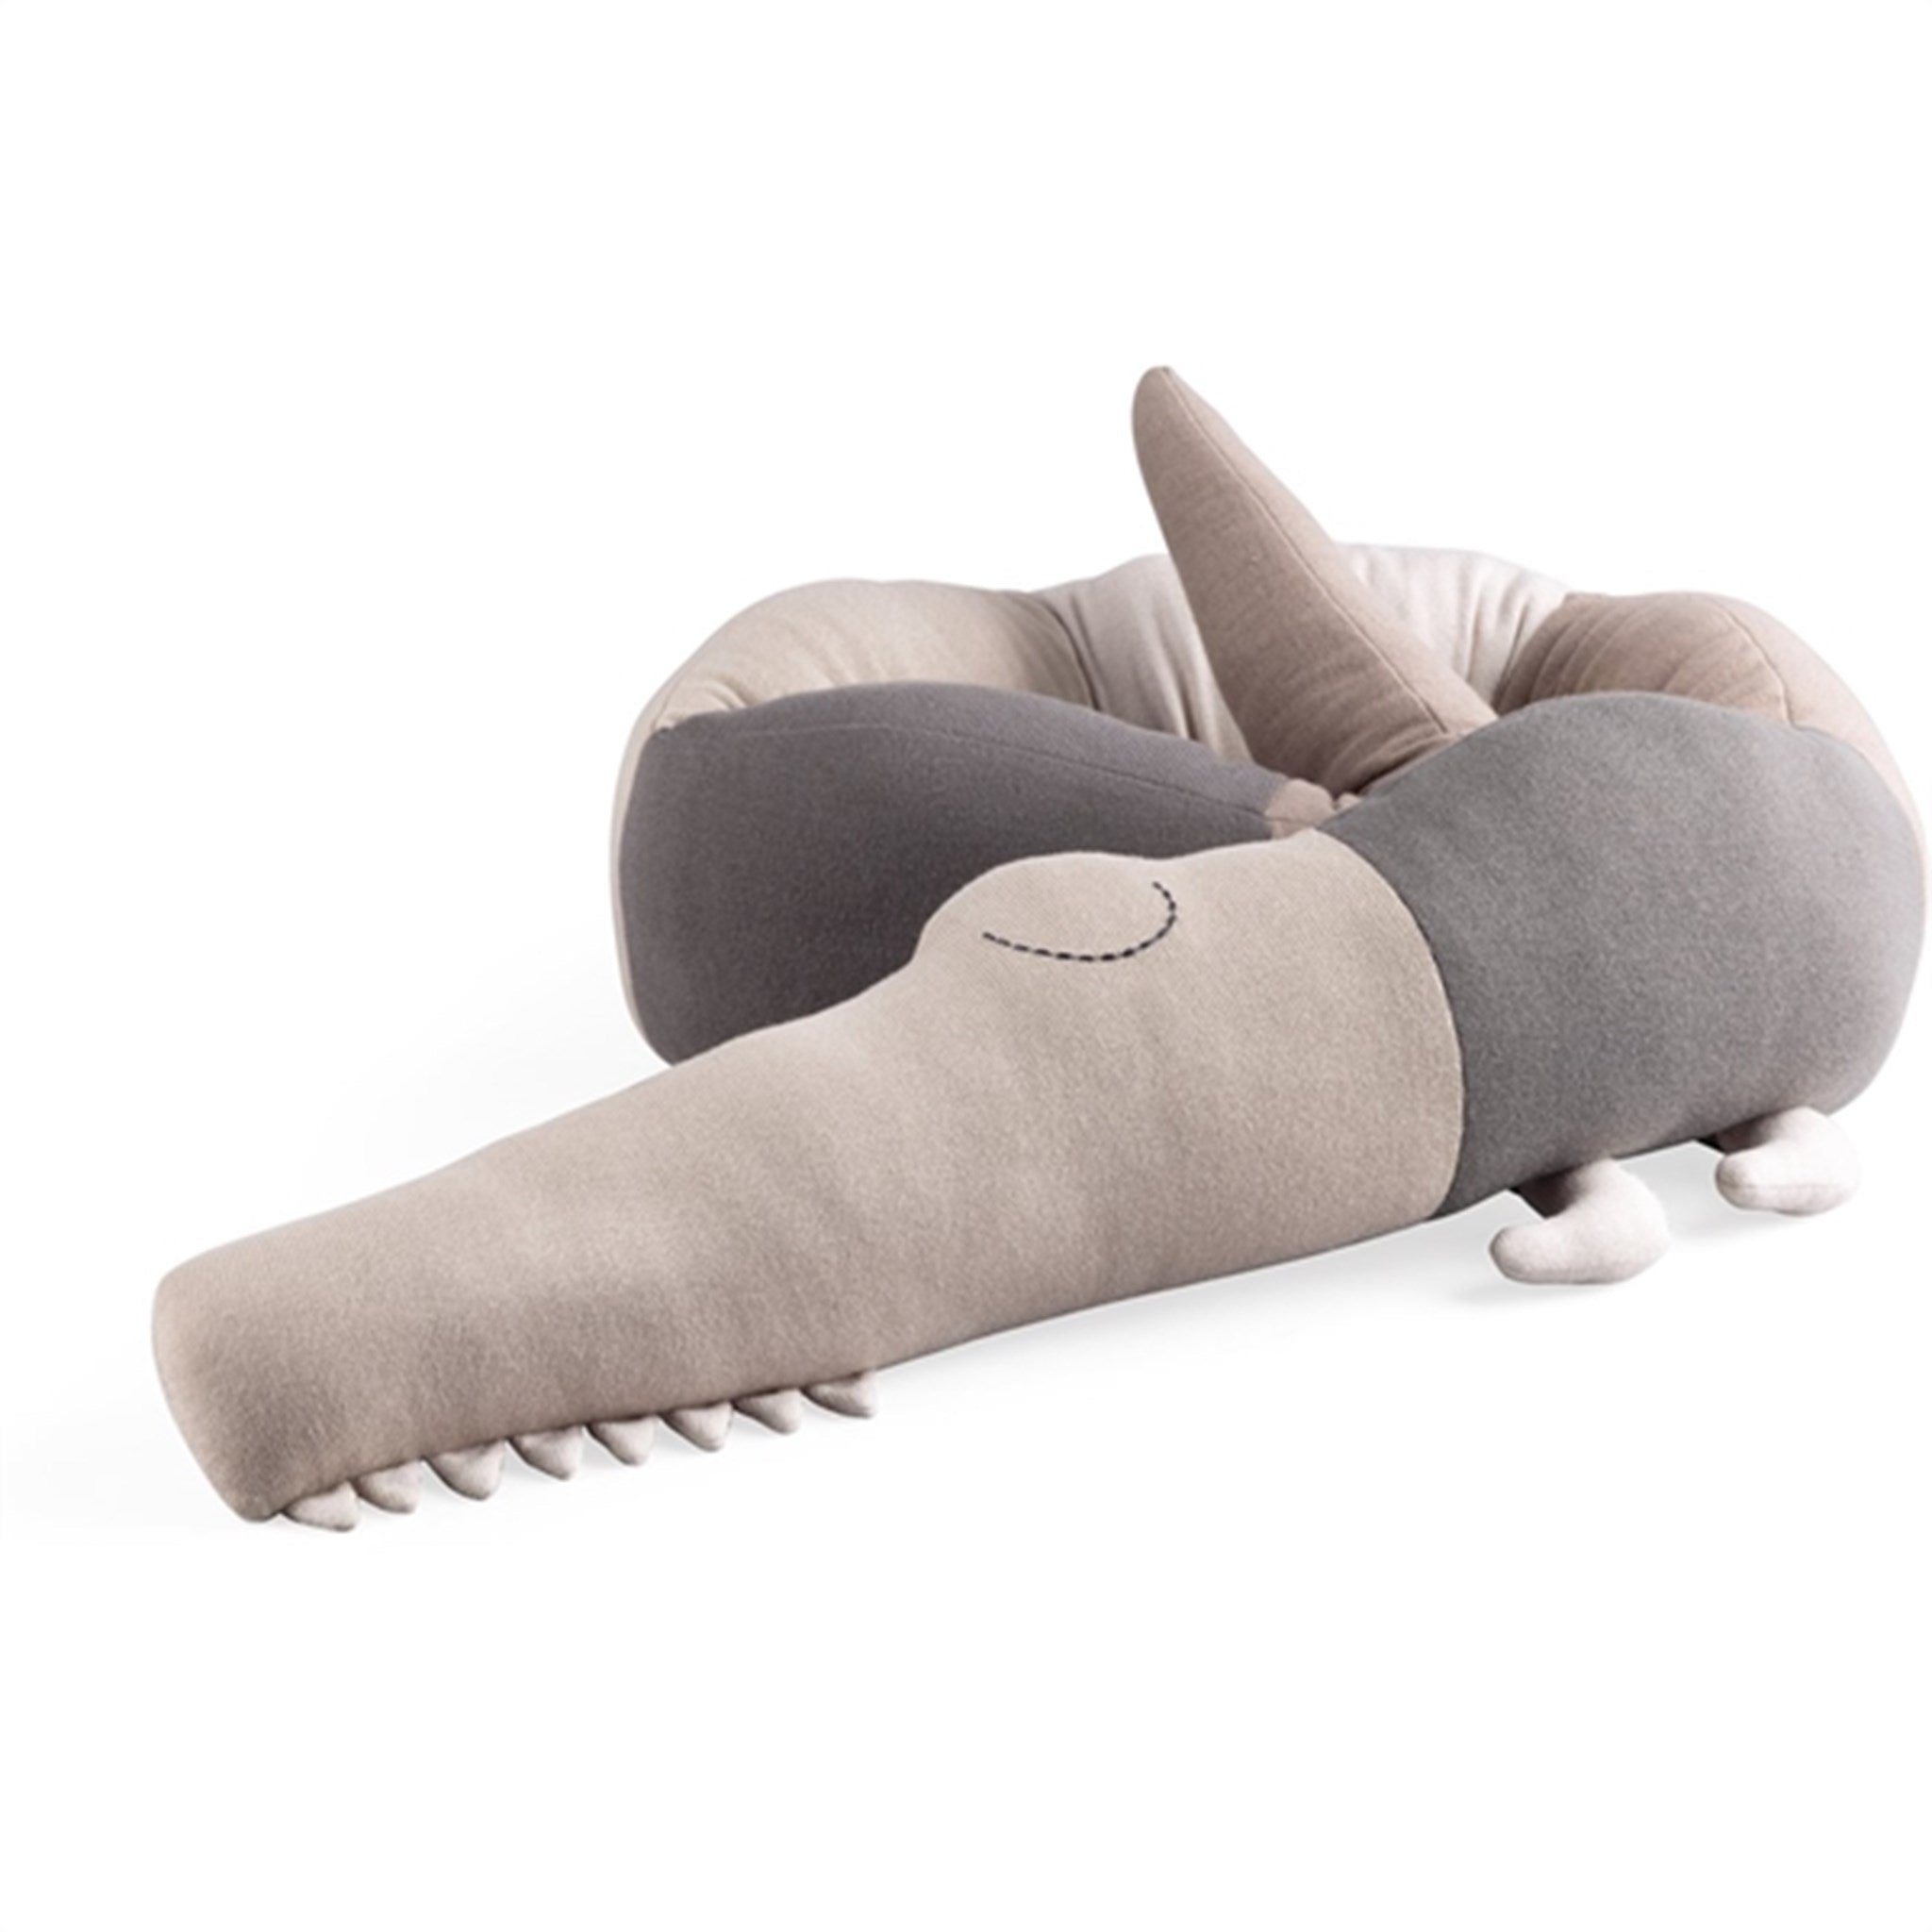 Sebra Knitted Cushion Sleepy Croc Seabreeze Beige